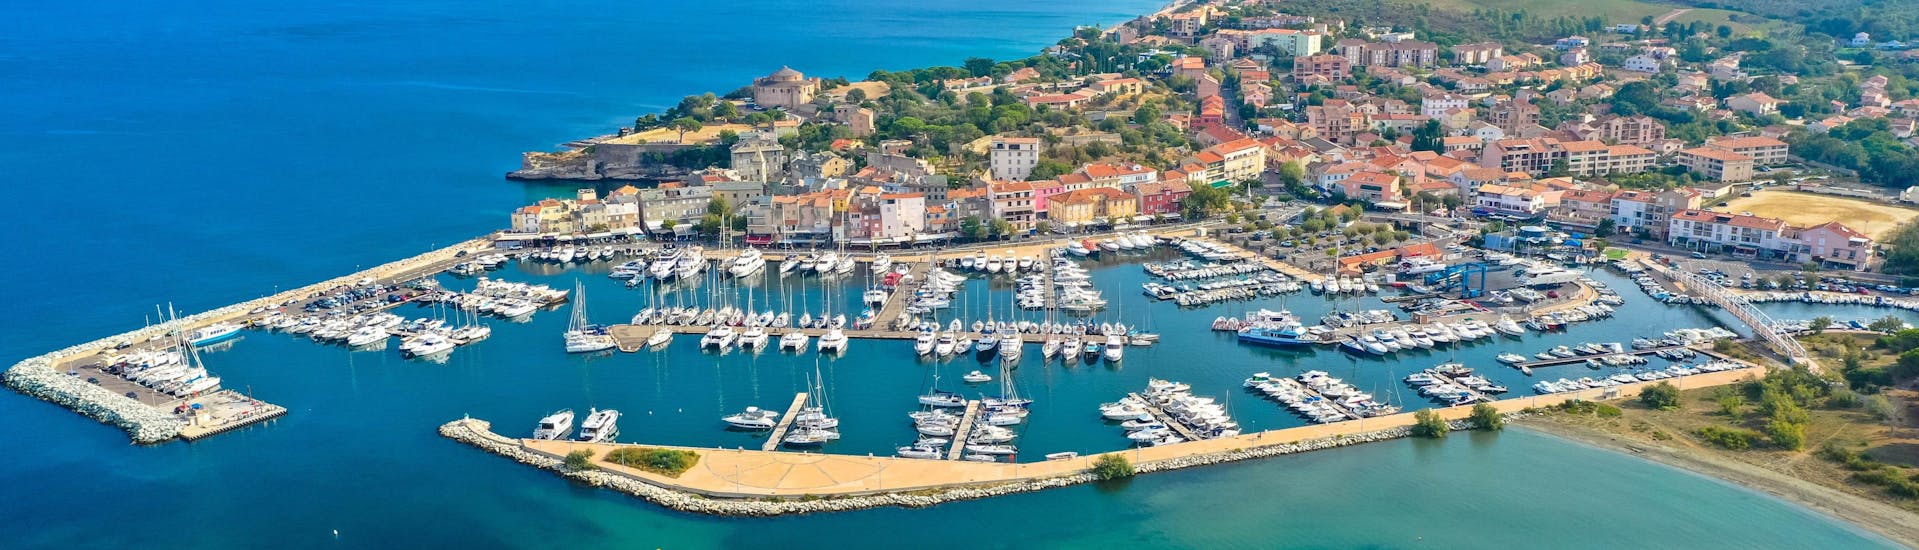 Vista aérea del puerto de Saint-Florent, en el norte de Córcega, lugar desde donde parten multitud de excursiones en barco hacia Cap Corse.